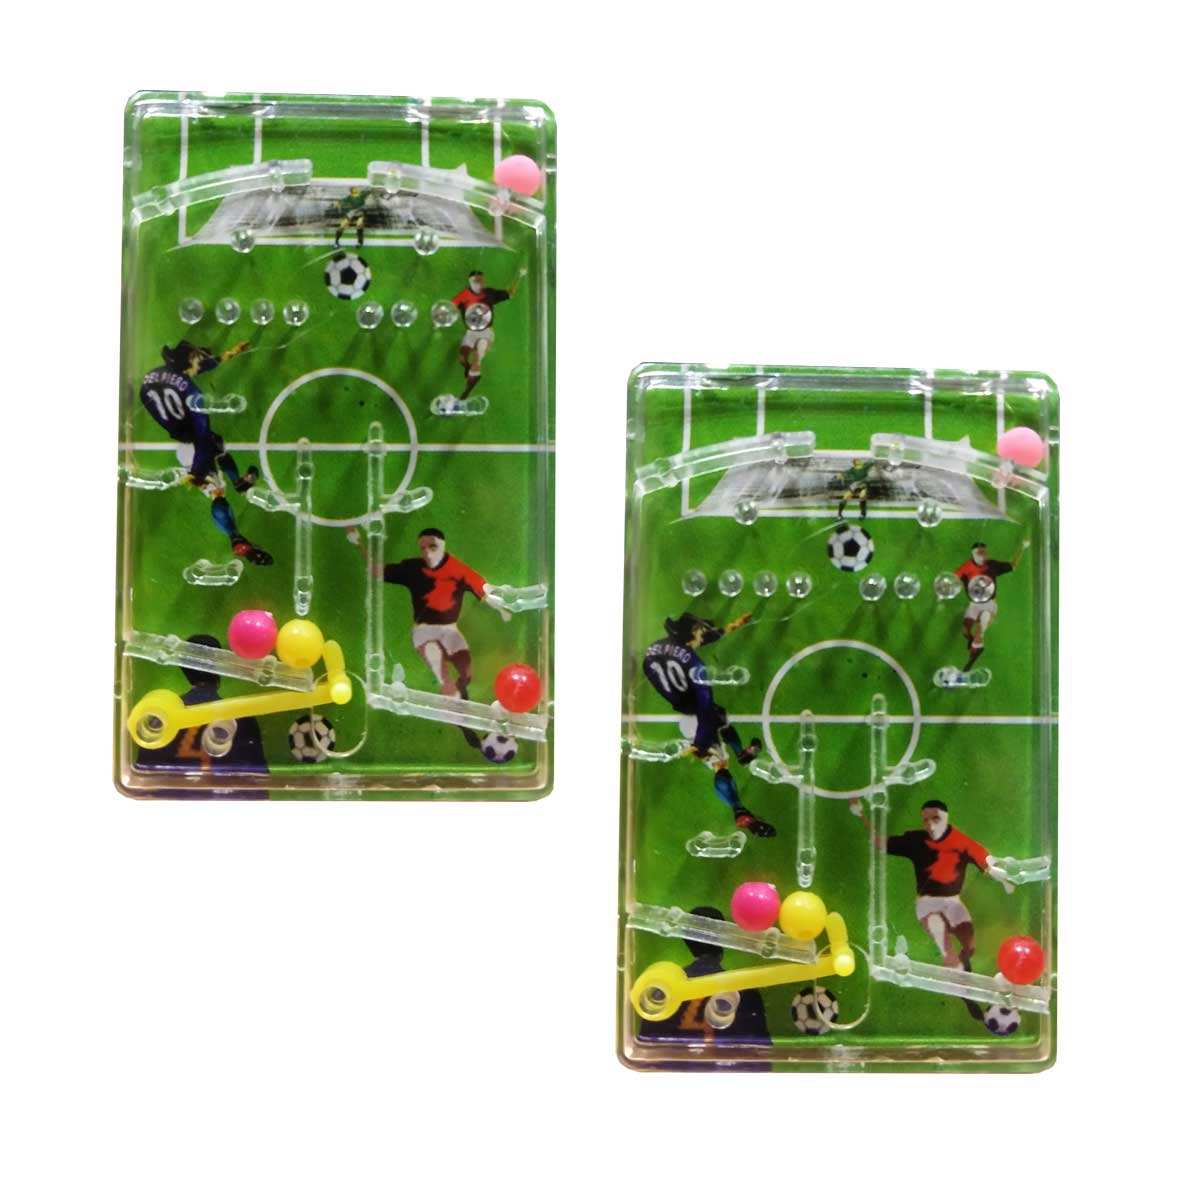 بازی پینبال مدل Soccer Pinball بسته 2 عددی